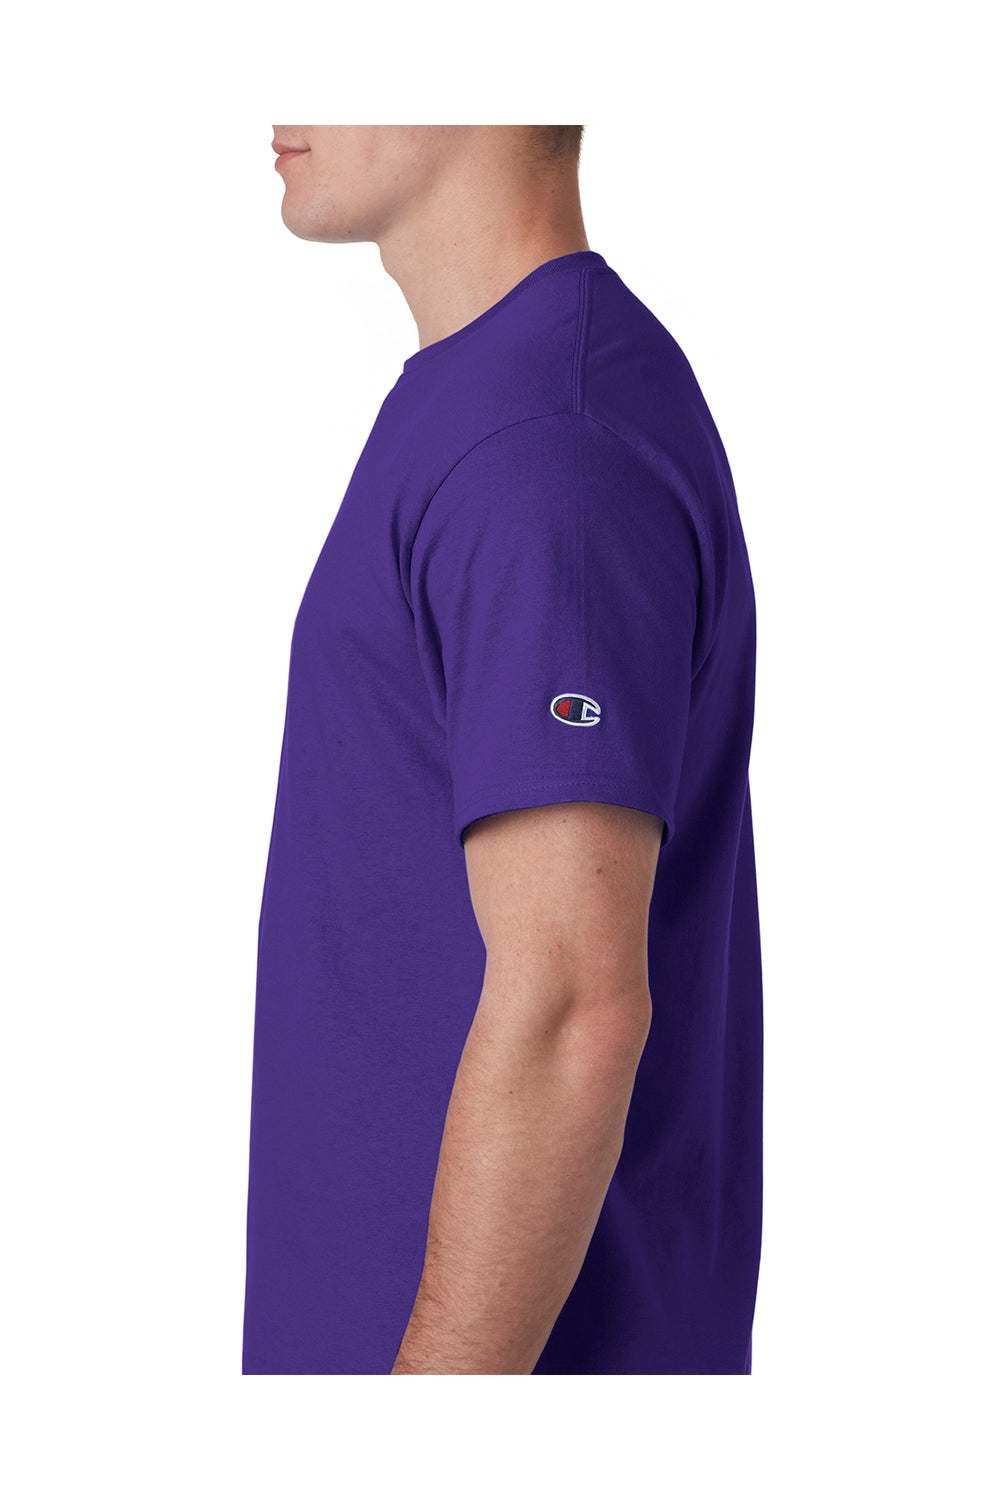 T425/T525C Mens Purple Short Sleeve Crewneck T-Shirt — BigTopShirtShop.com